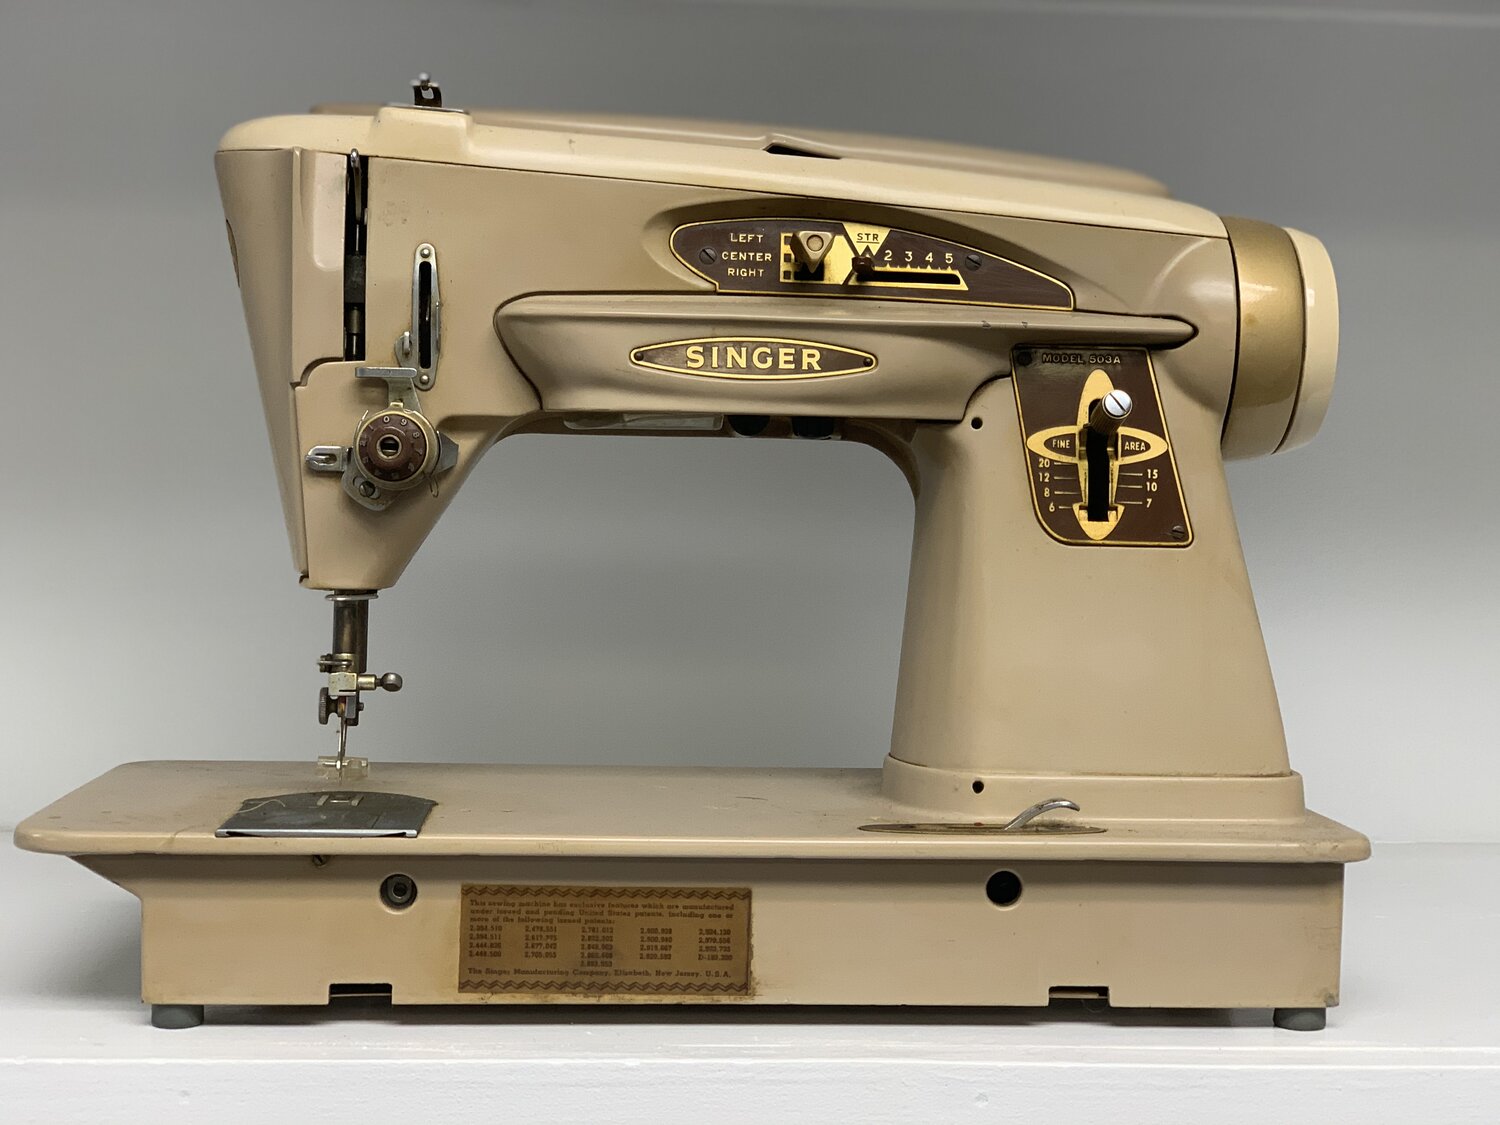 Old beige Singer sewing machine